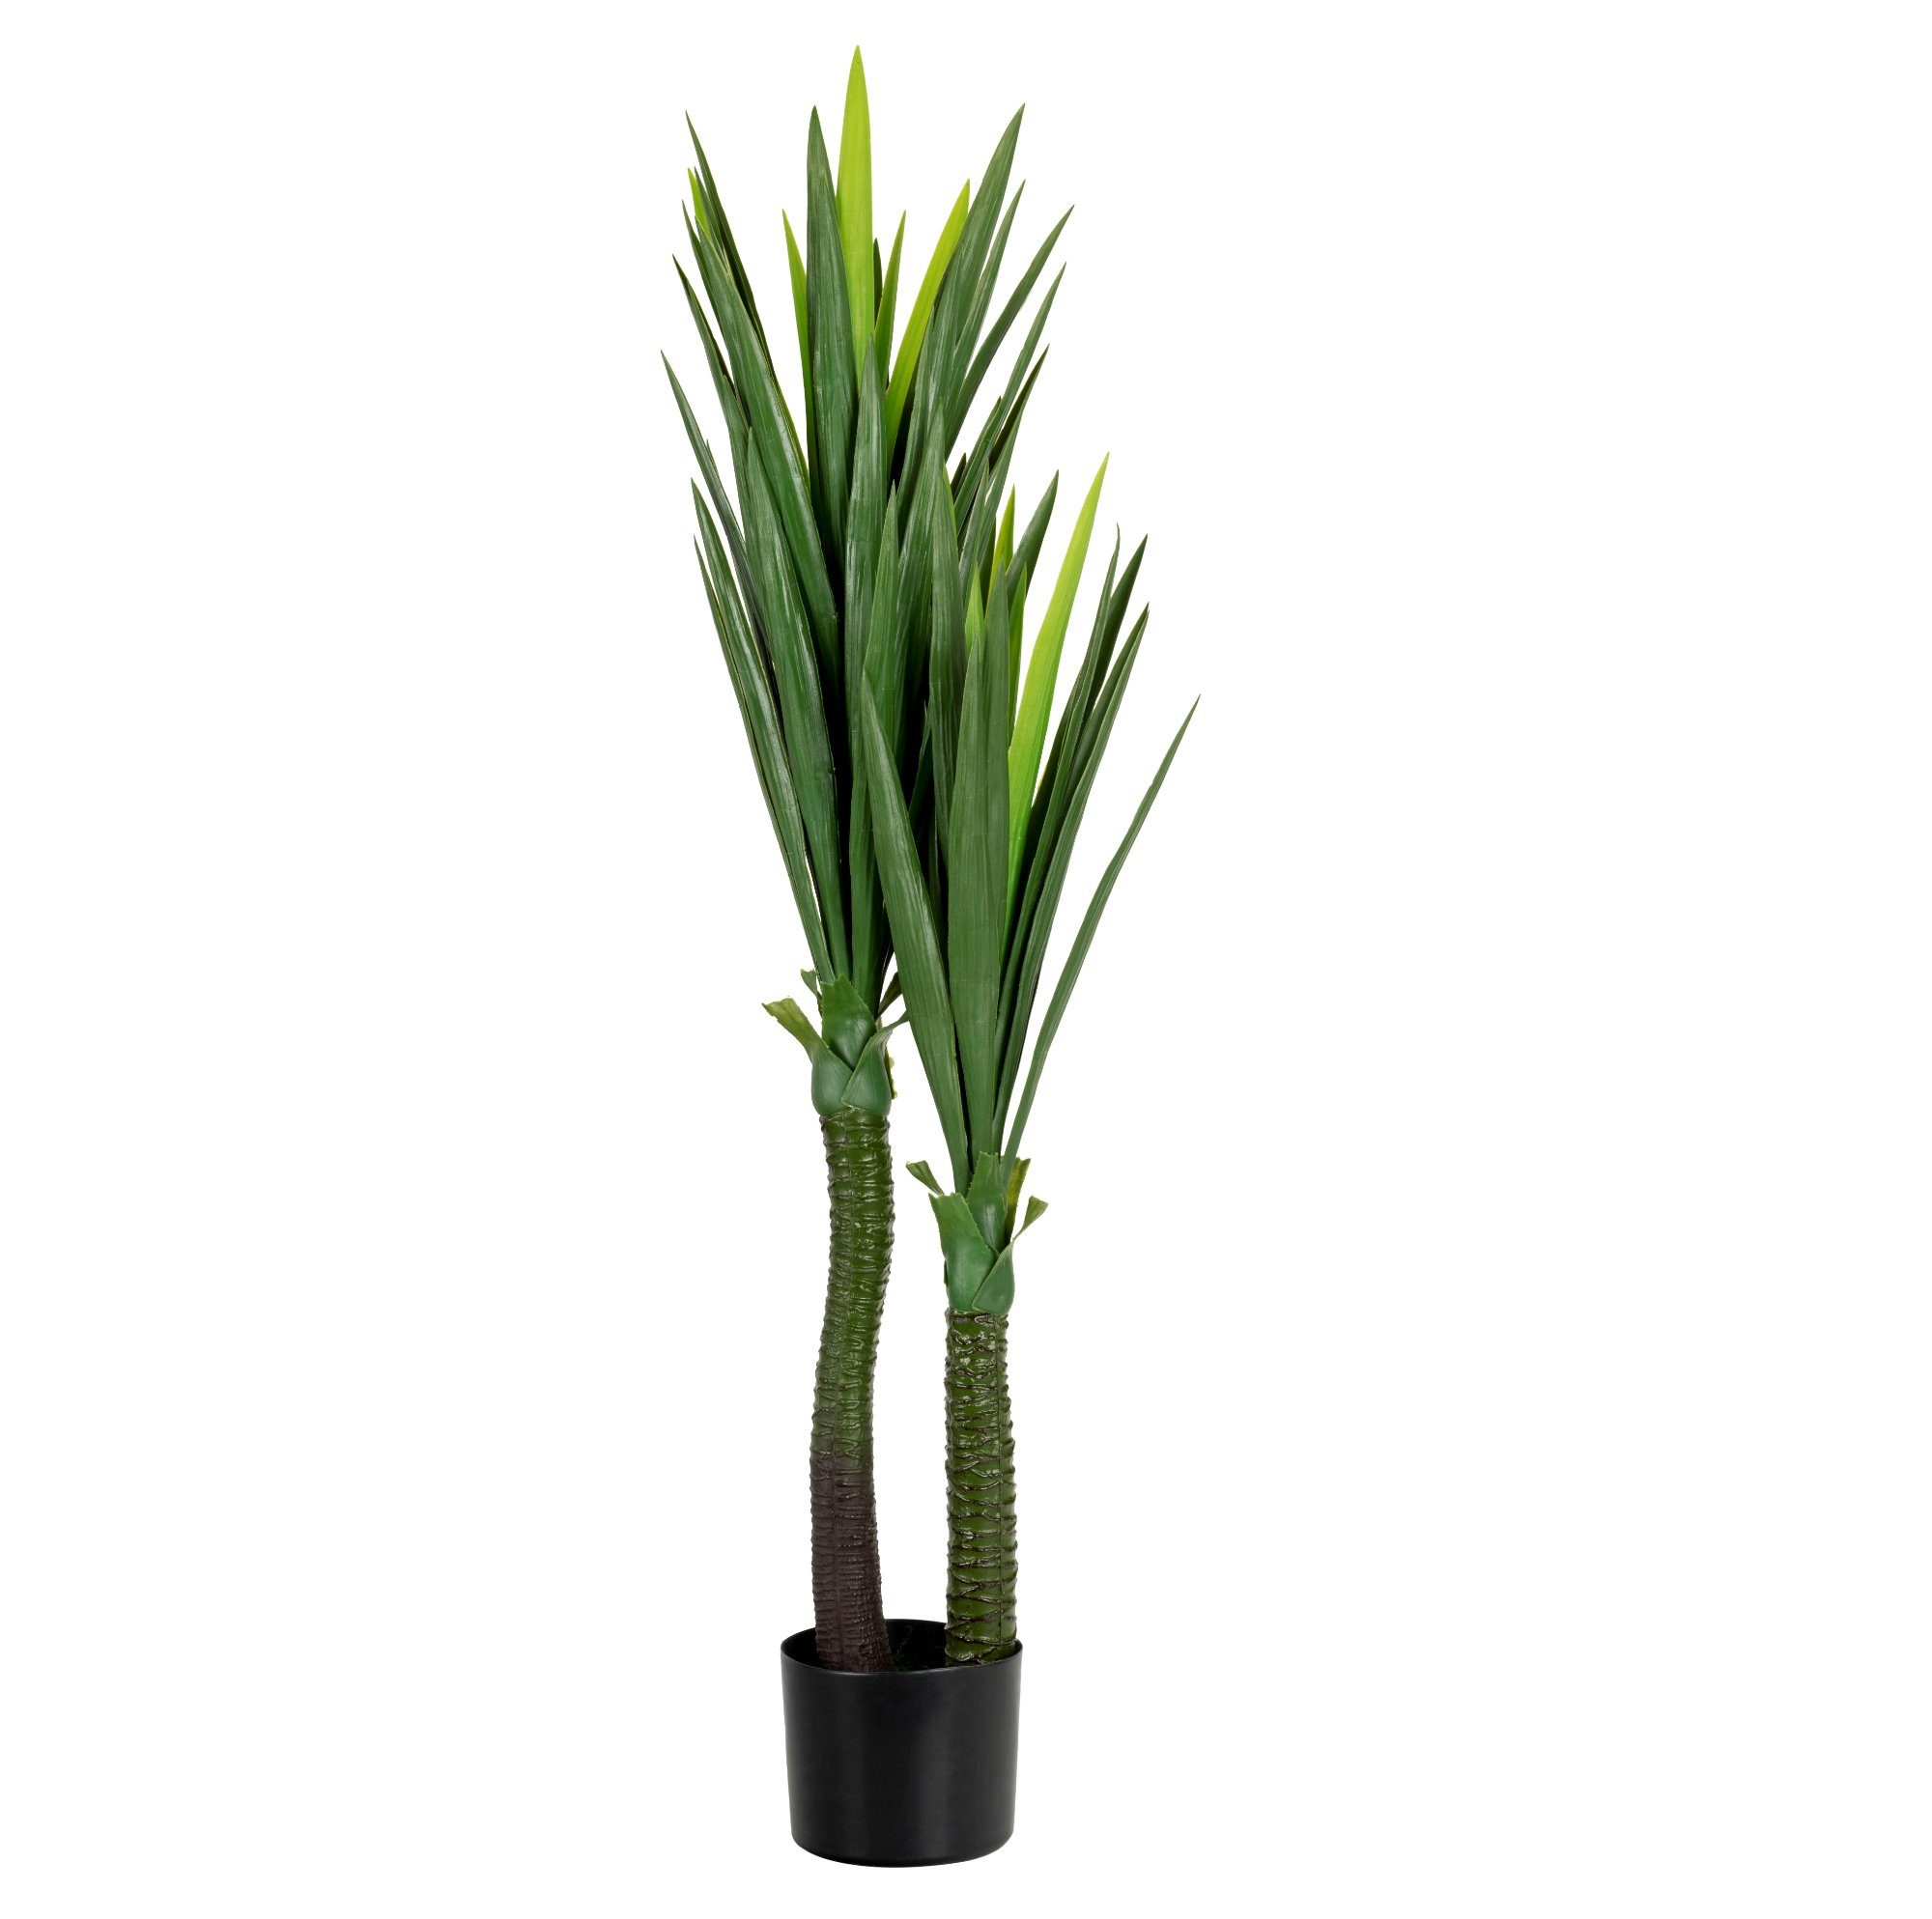 Kunstpalme YU-115 Kunstpflanze Yuccapalme, im cm, 120 künstliche joycraft, Palmllilie Kunststofftopf Palme Höhe